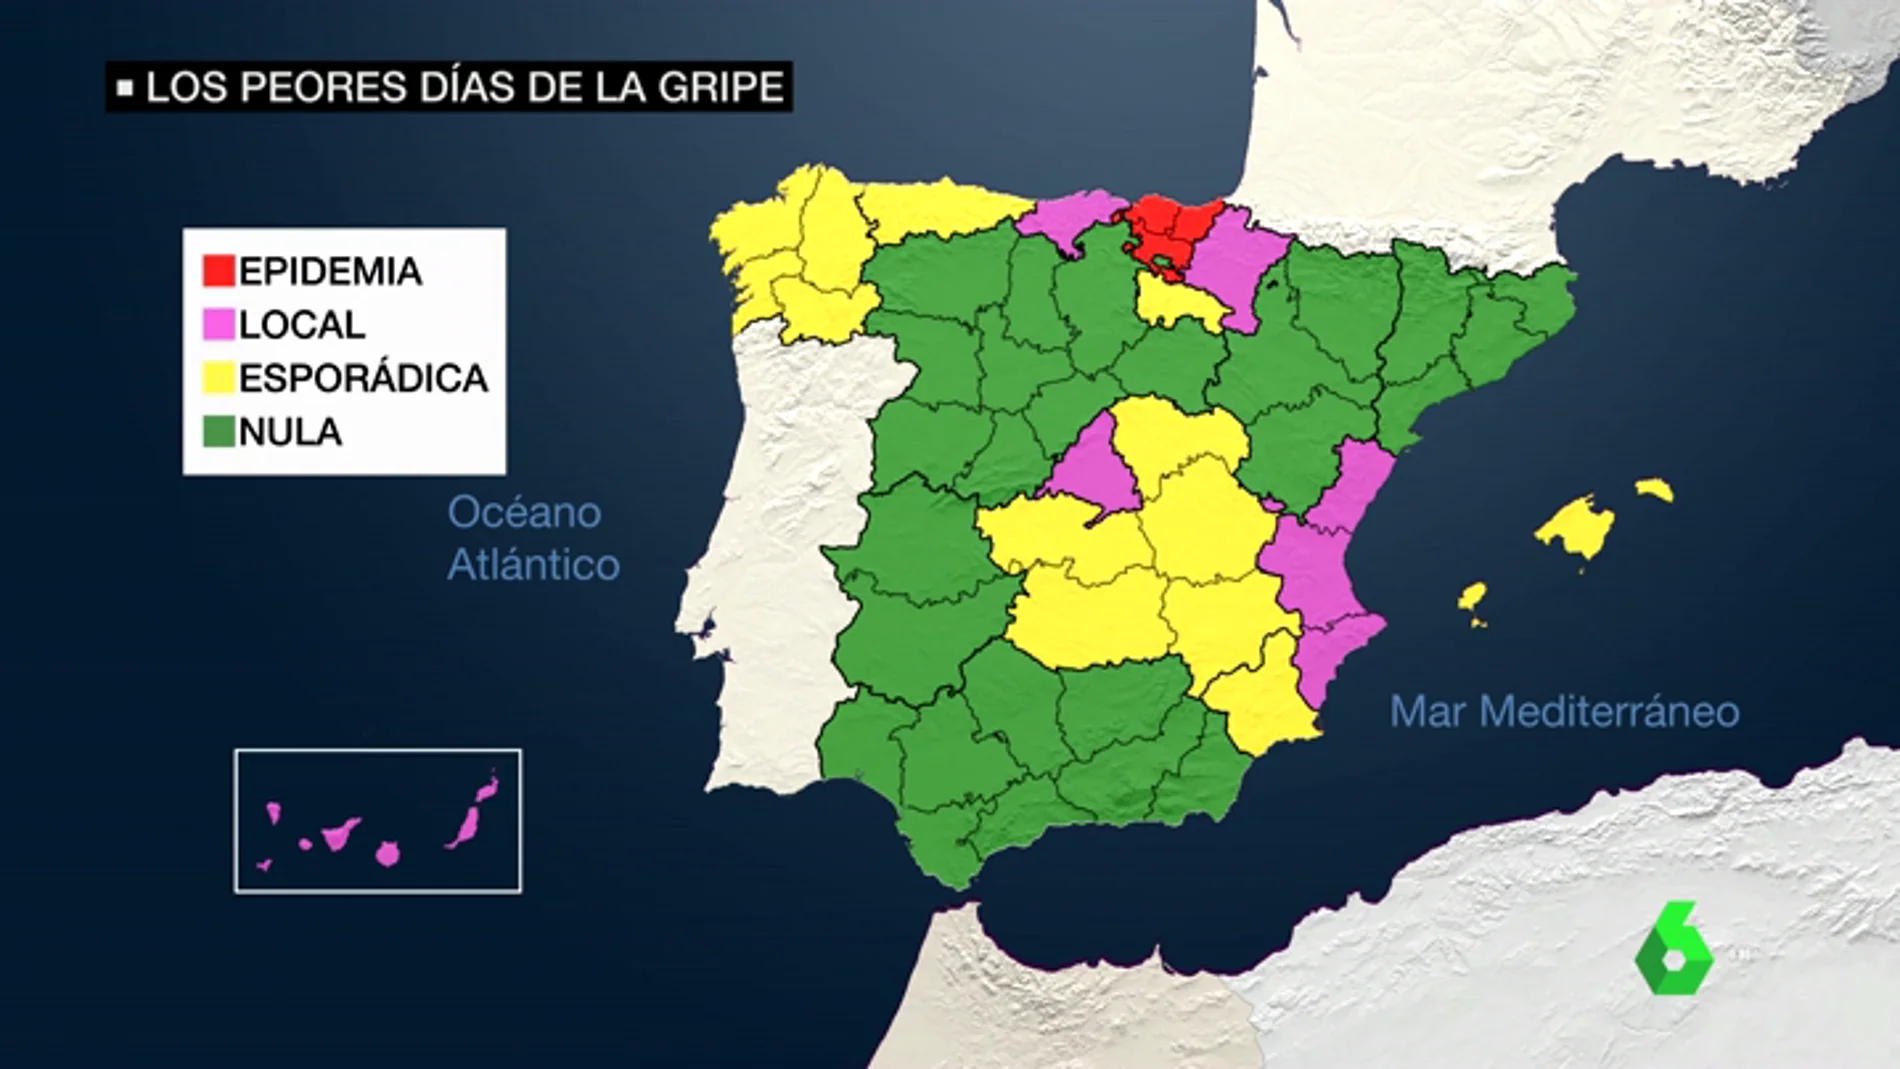 Llegan los peores días de la gripe: el virus se extiende por toda España siendo ya epidemia en País Vasco